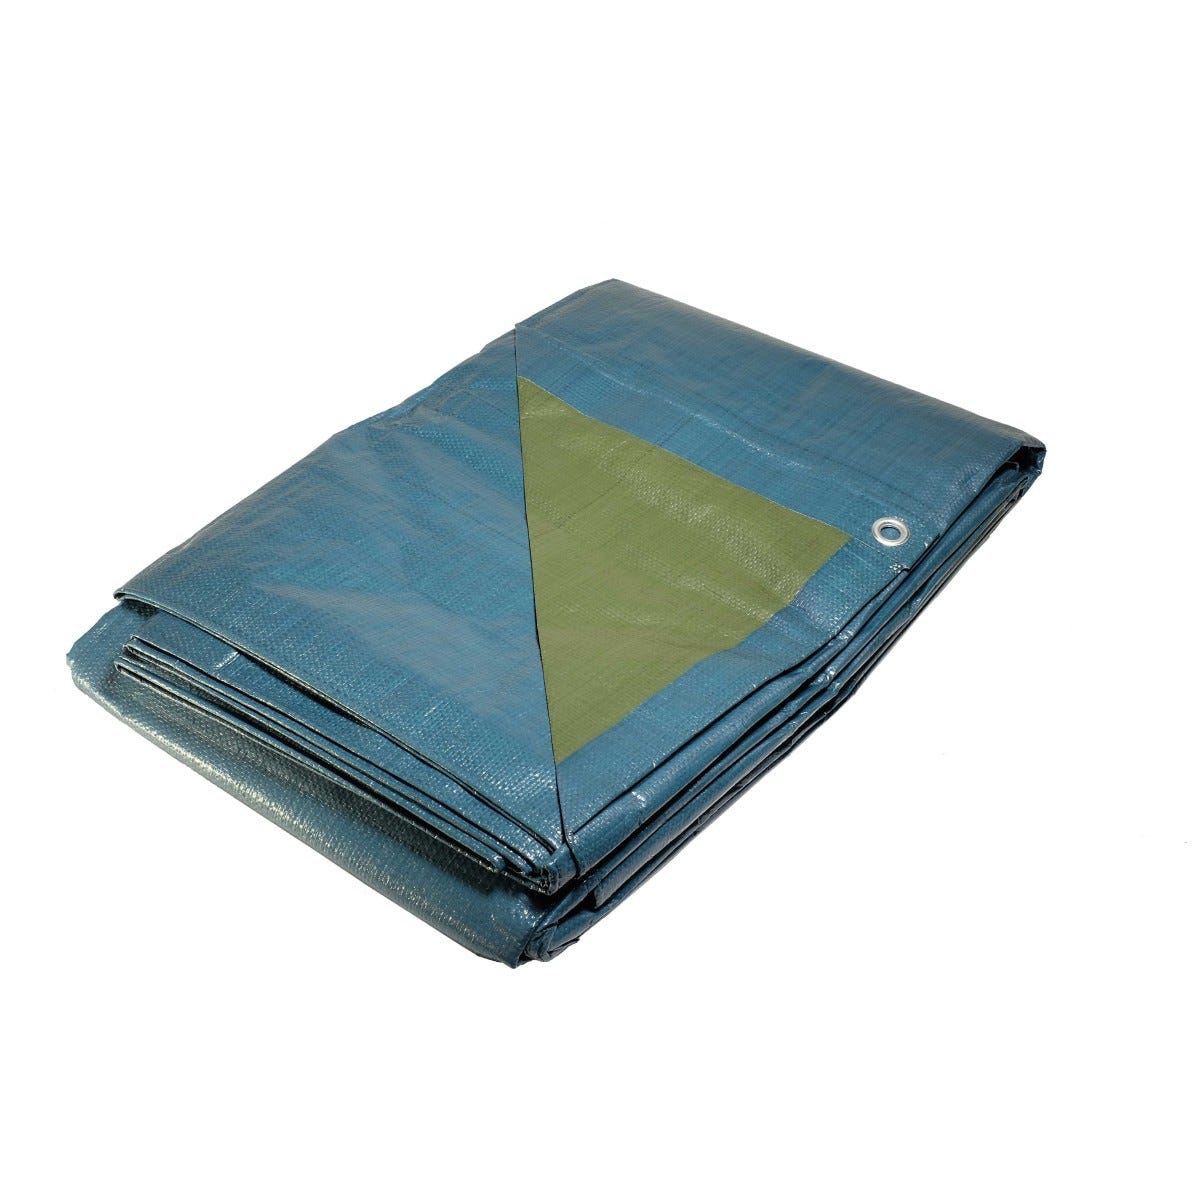 Bâche plastique 4x5 m bleue et verte 150g/m² - bâche de protection polyéthylène 0